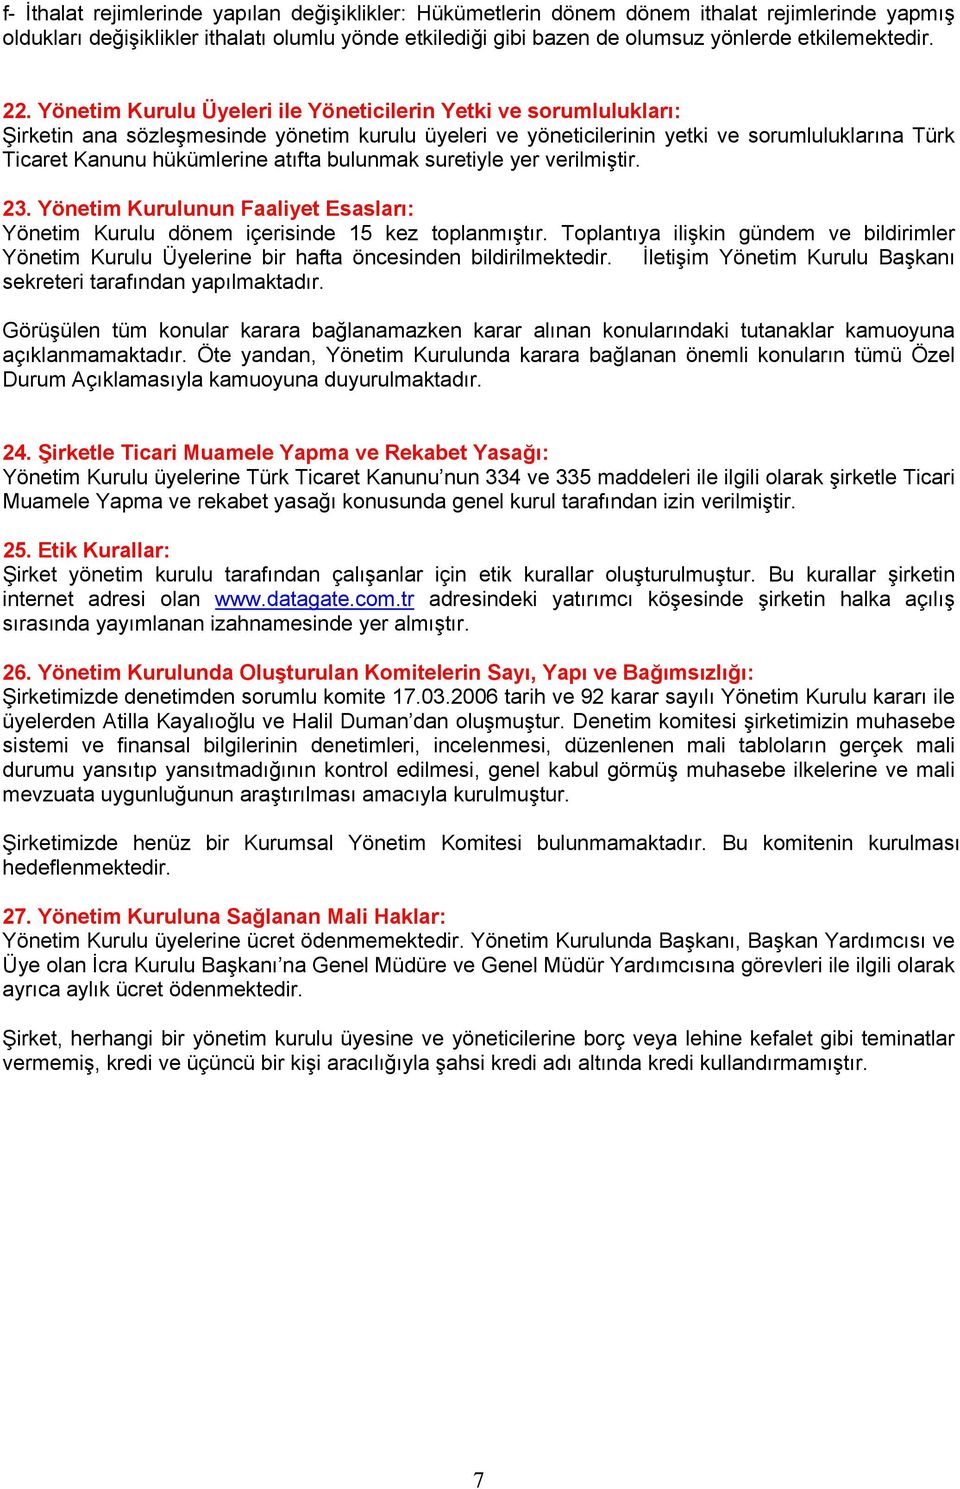 Yönetim Kurulu Üyeleri ile Yöneticilerin Yetki ve sorumlulukları: Şirketin ana sözleşmesinde yönetim kurulu üyeleri ve yöneticilerinin yetki ve sorumluluklarına Türk Ticaret Kanunu hükümlerine atıfta